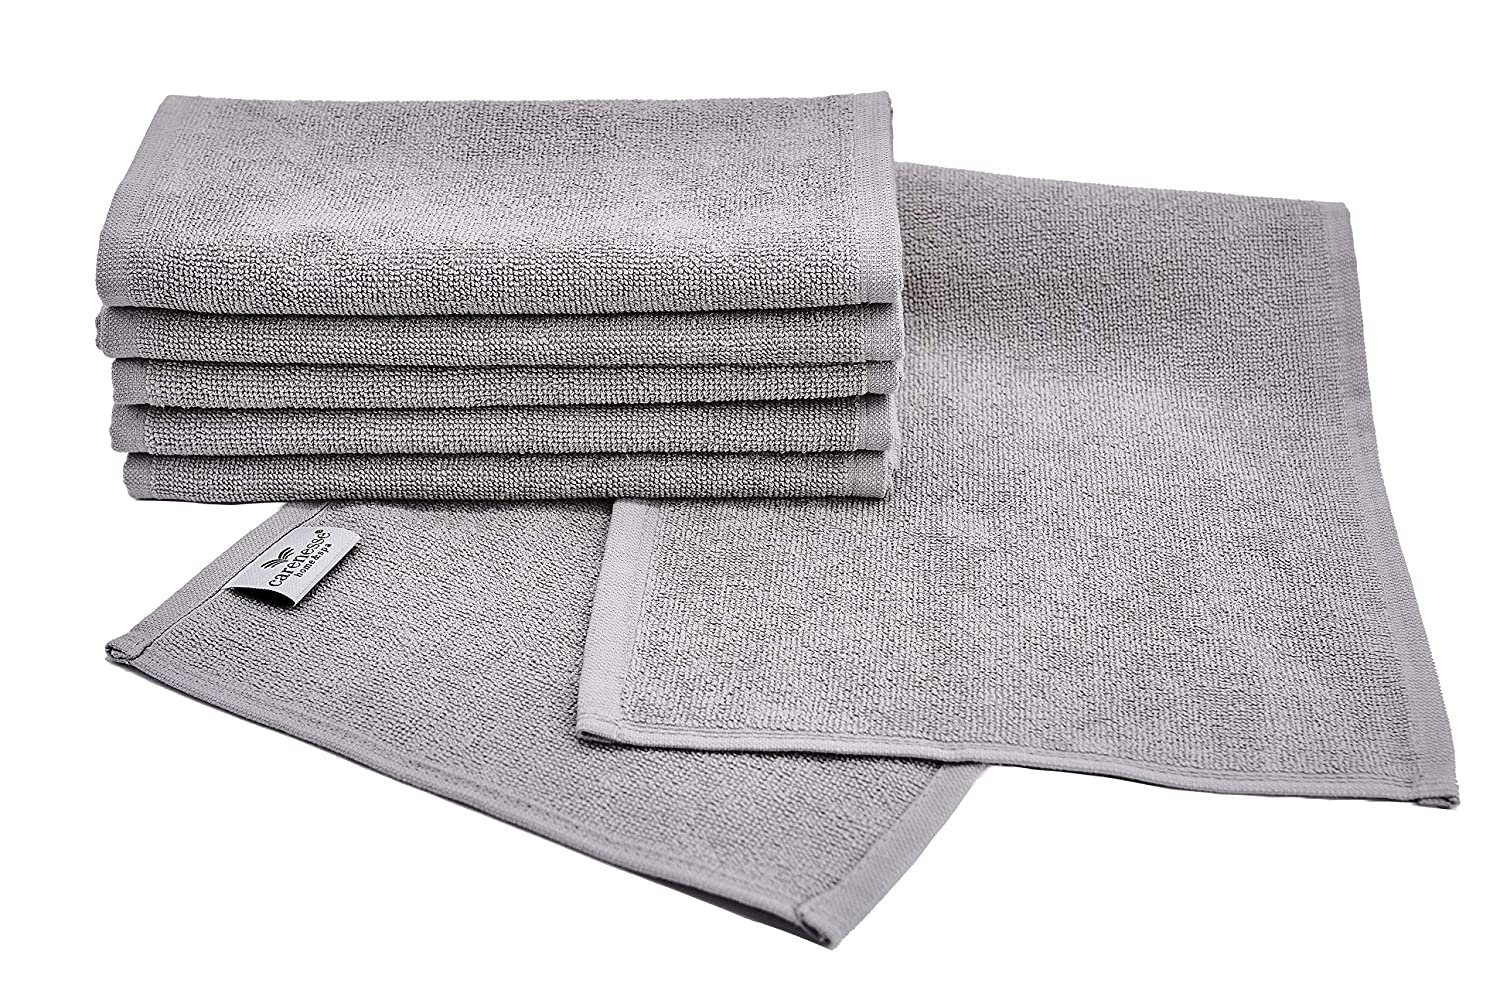 Carenesse Rasierset 6x Rasiertücher 22 x 70 cm grau, hygienische & saugstarke Baumwolle, Barber Towel: perfekte Passform Premium Studioqualität Rasiertuch